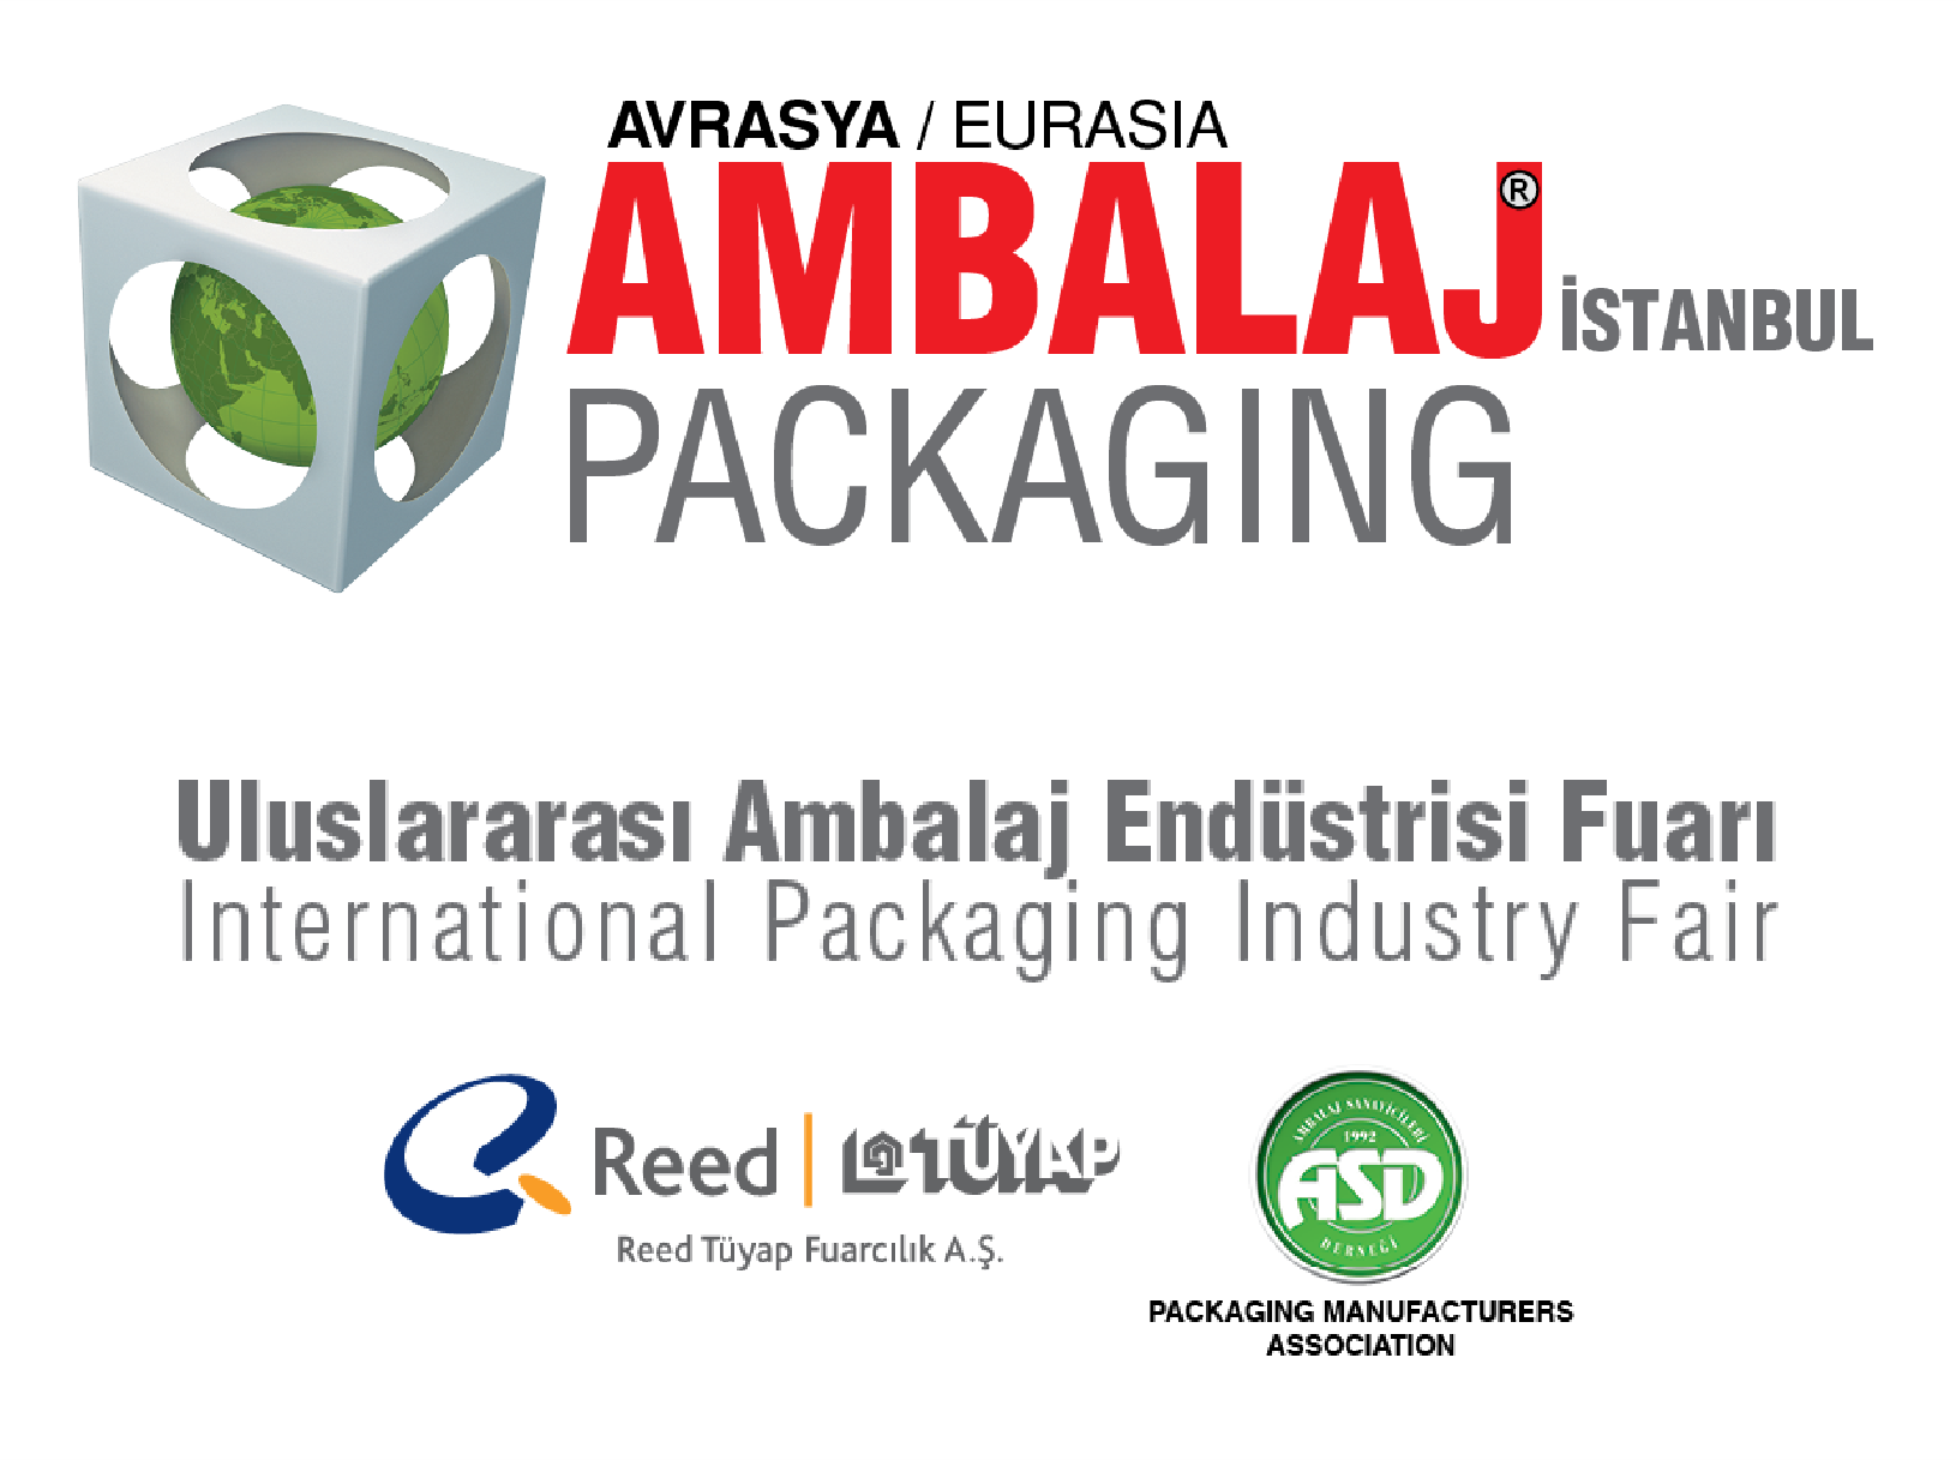 Euroasia Packaging